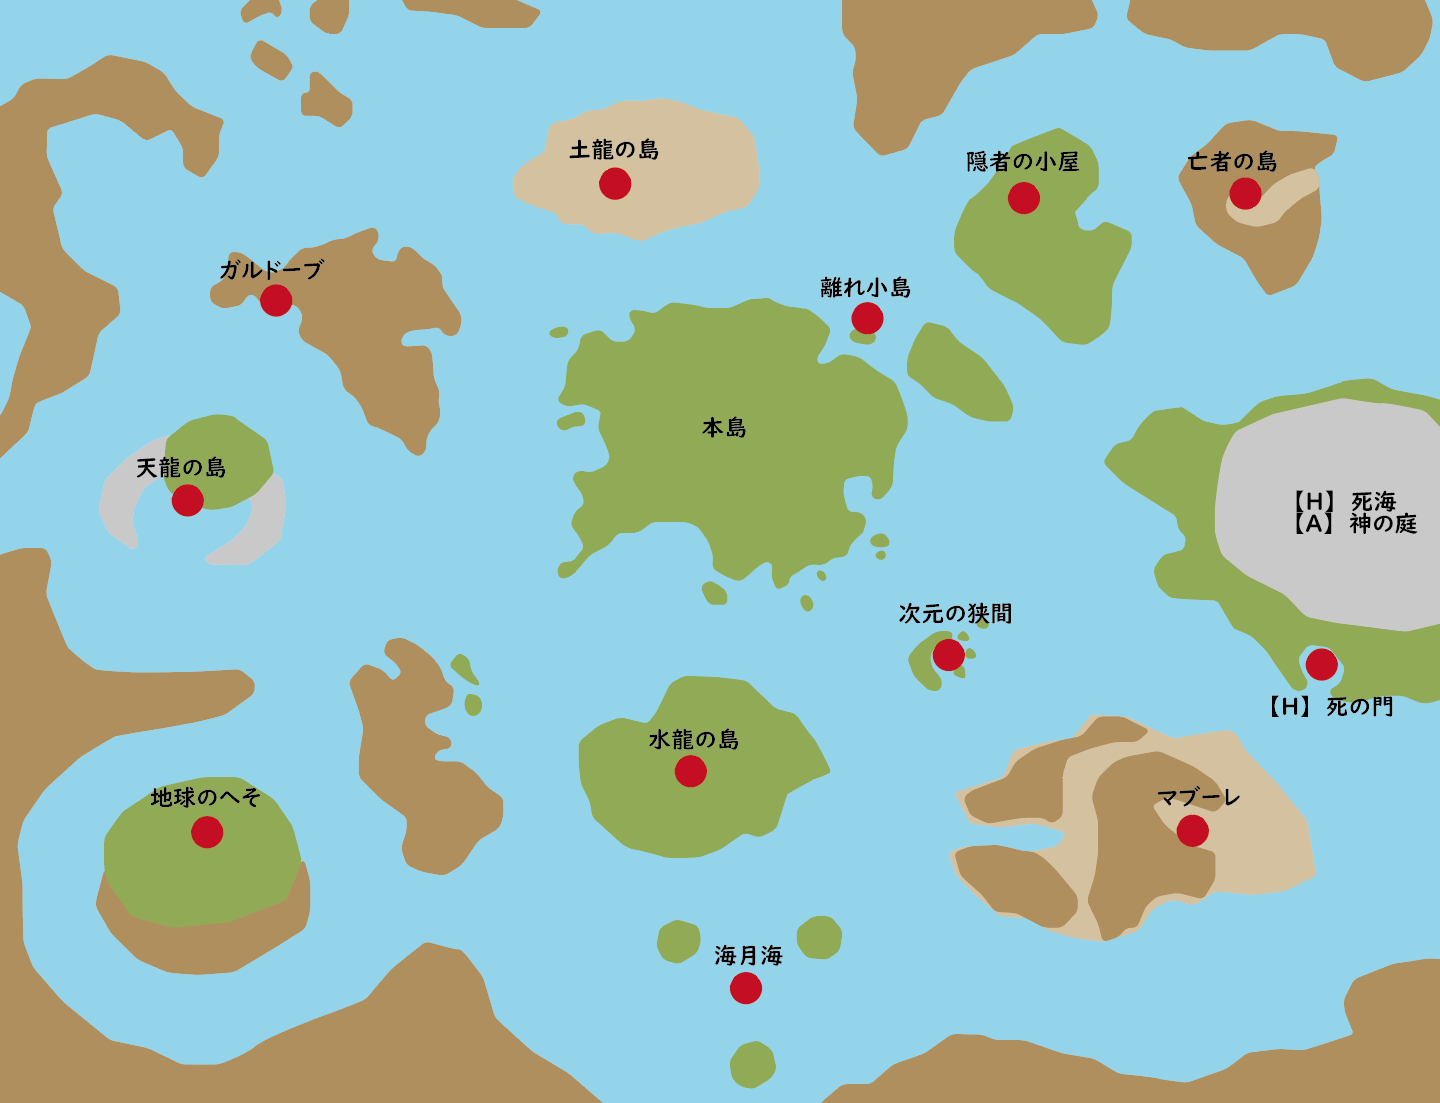 ワールドマップ エルニド諸島